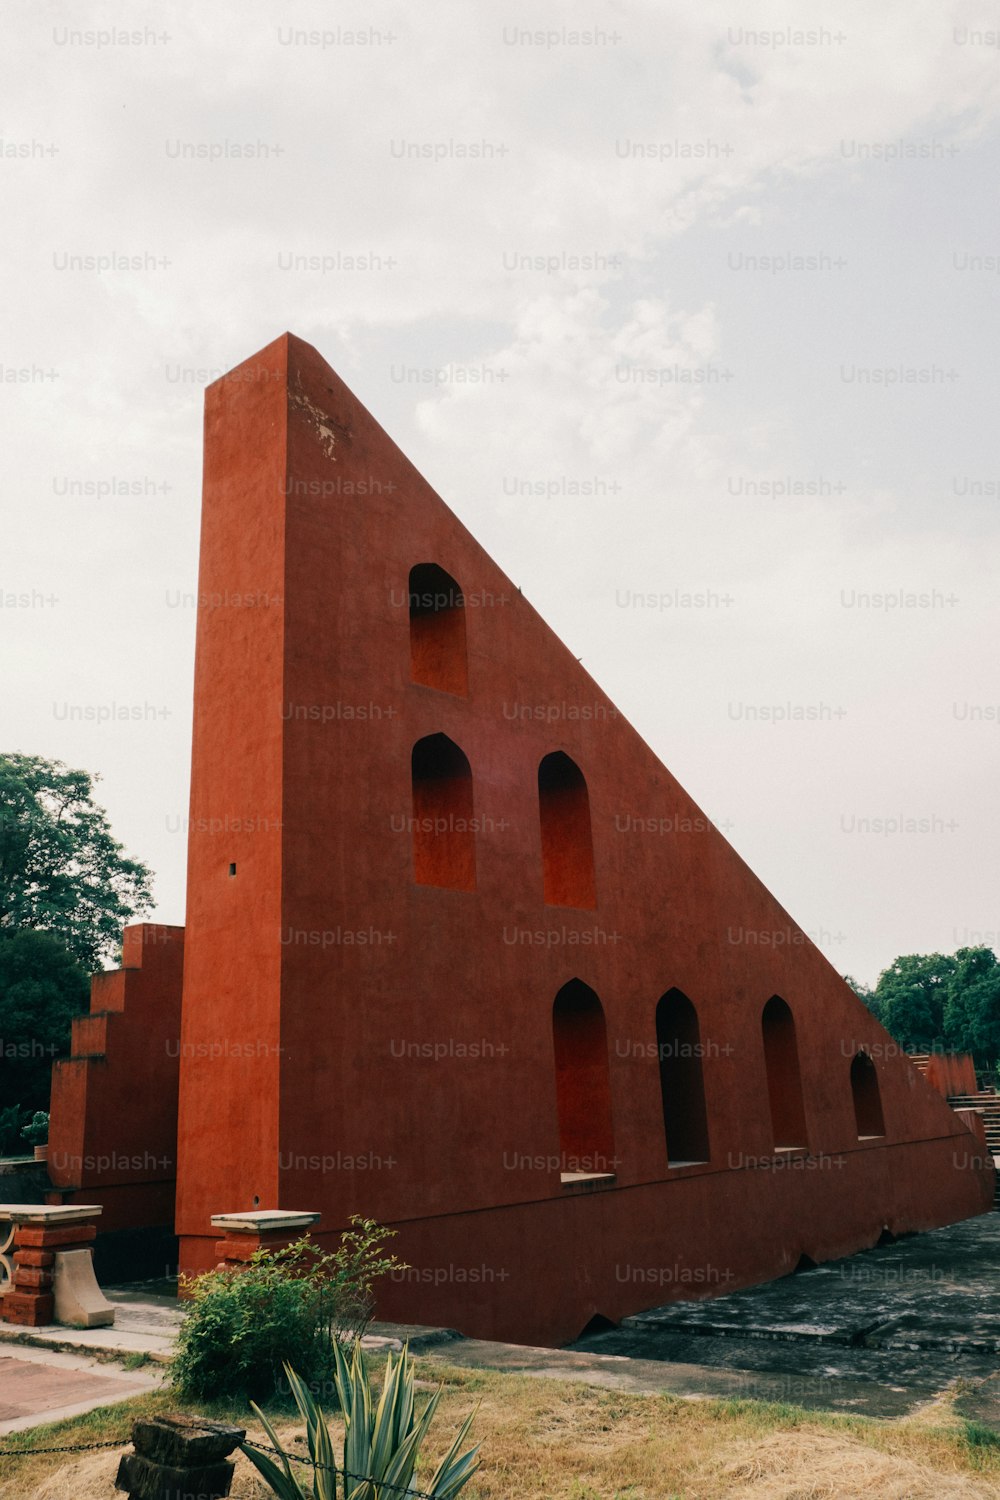 그 위에 삼각형 모양의 큰 빨간색 건물